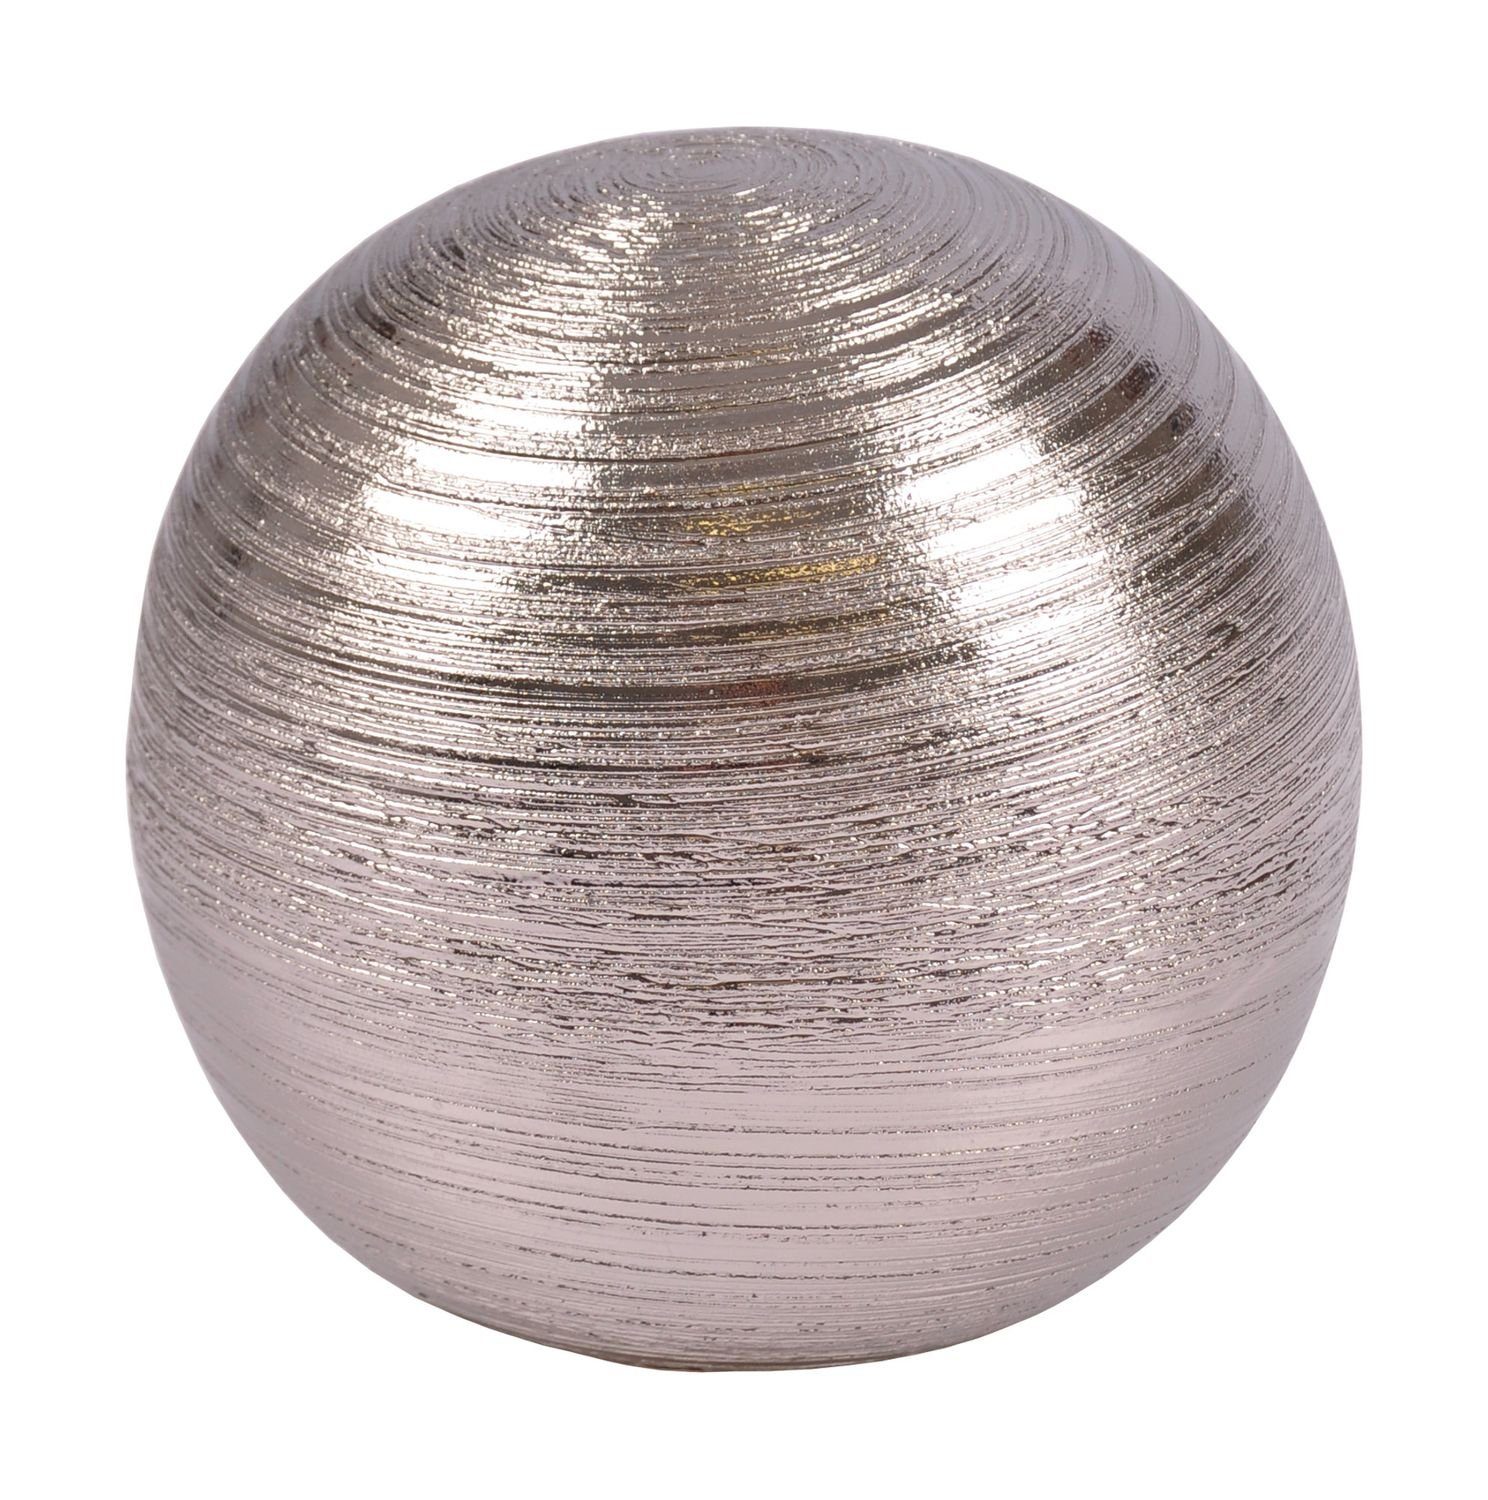 Tischdeko Dekokugel silber aus Ku Dekofigur Silberkugel Keramik New Dekofigur 15,5cm Home